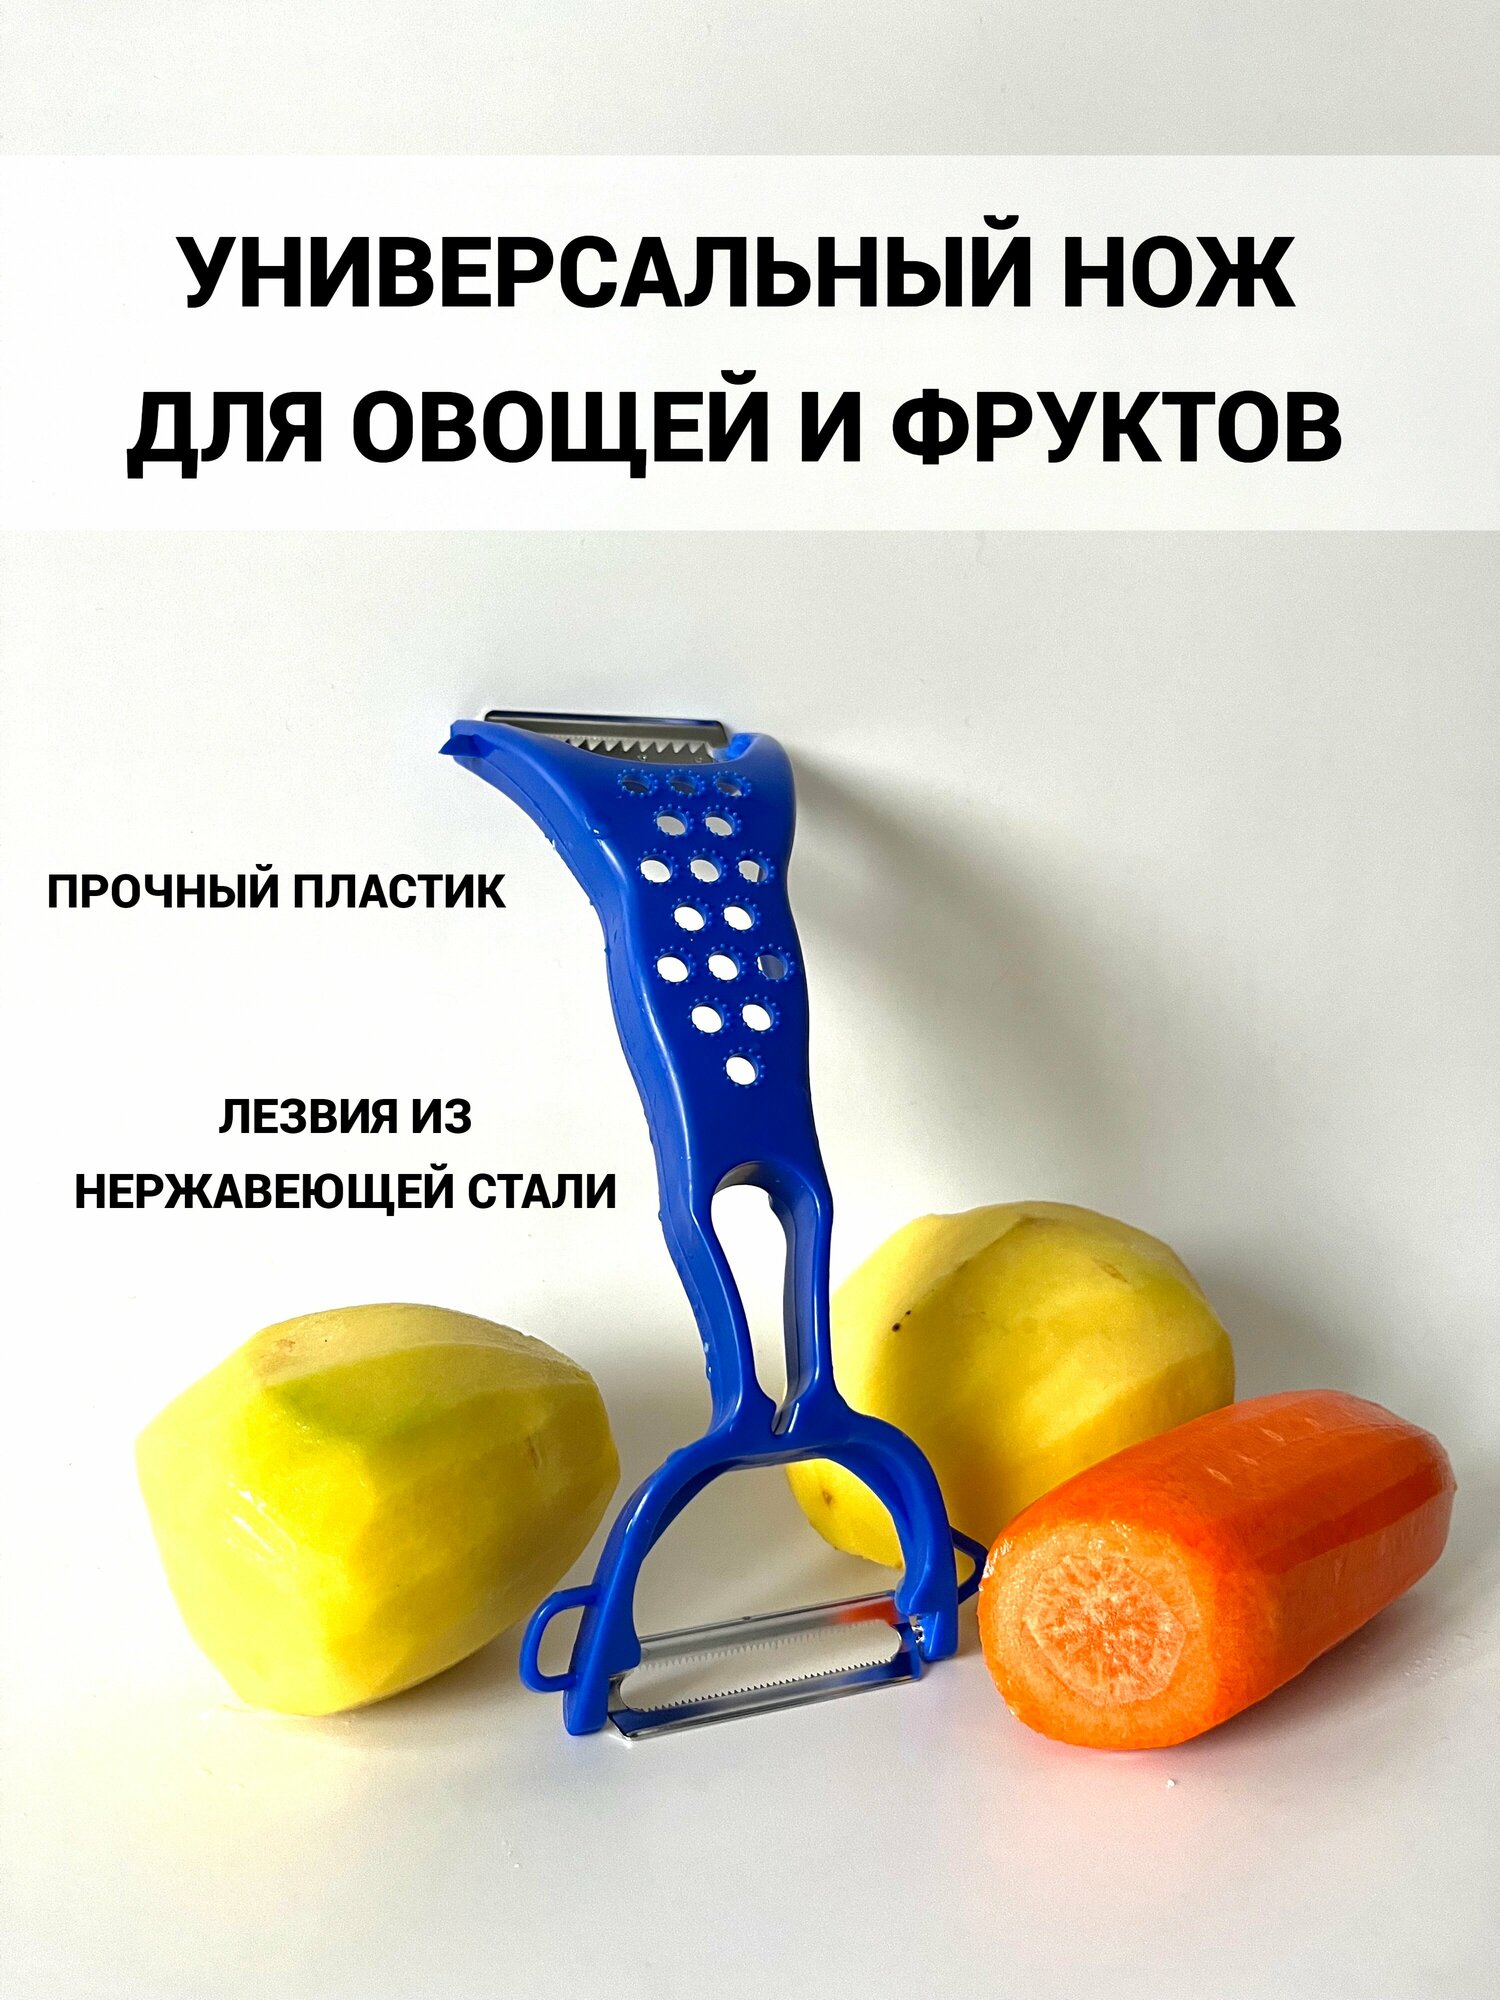 Фрукто-овщечистка ручная 5 в 1/горизонтальная /универсальная / для овощей и фруктов/ПИК/мини-терка